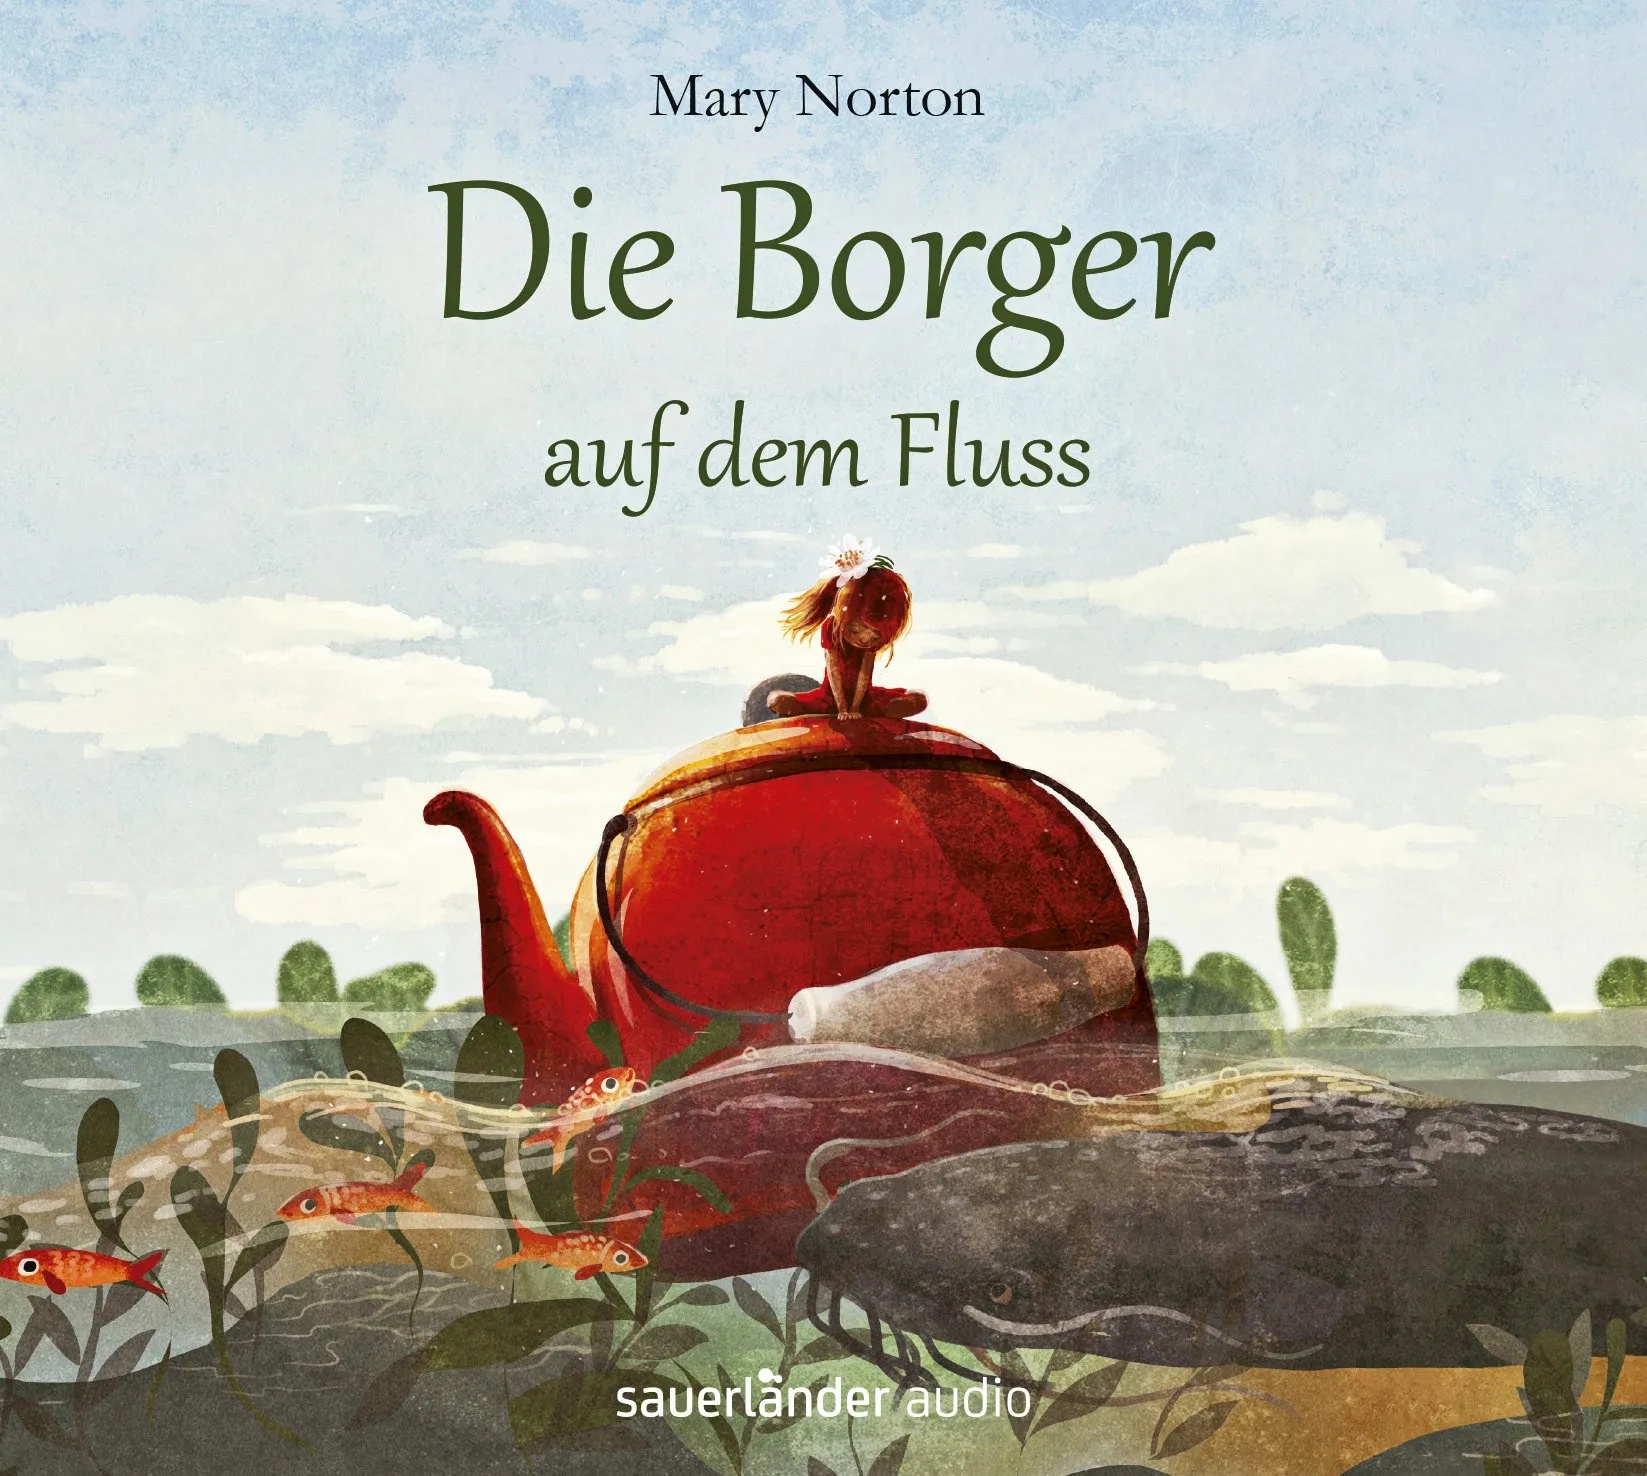 Die Borger - 3 - Die Borger Auf Dem Fluss - Mary Norton (Hörbuch)